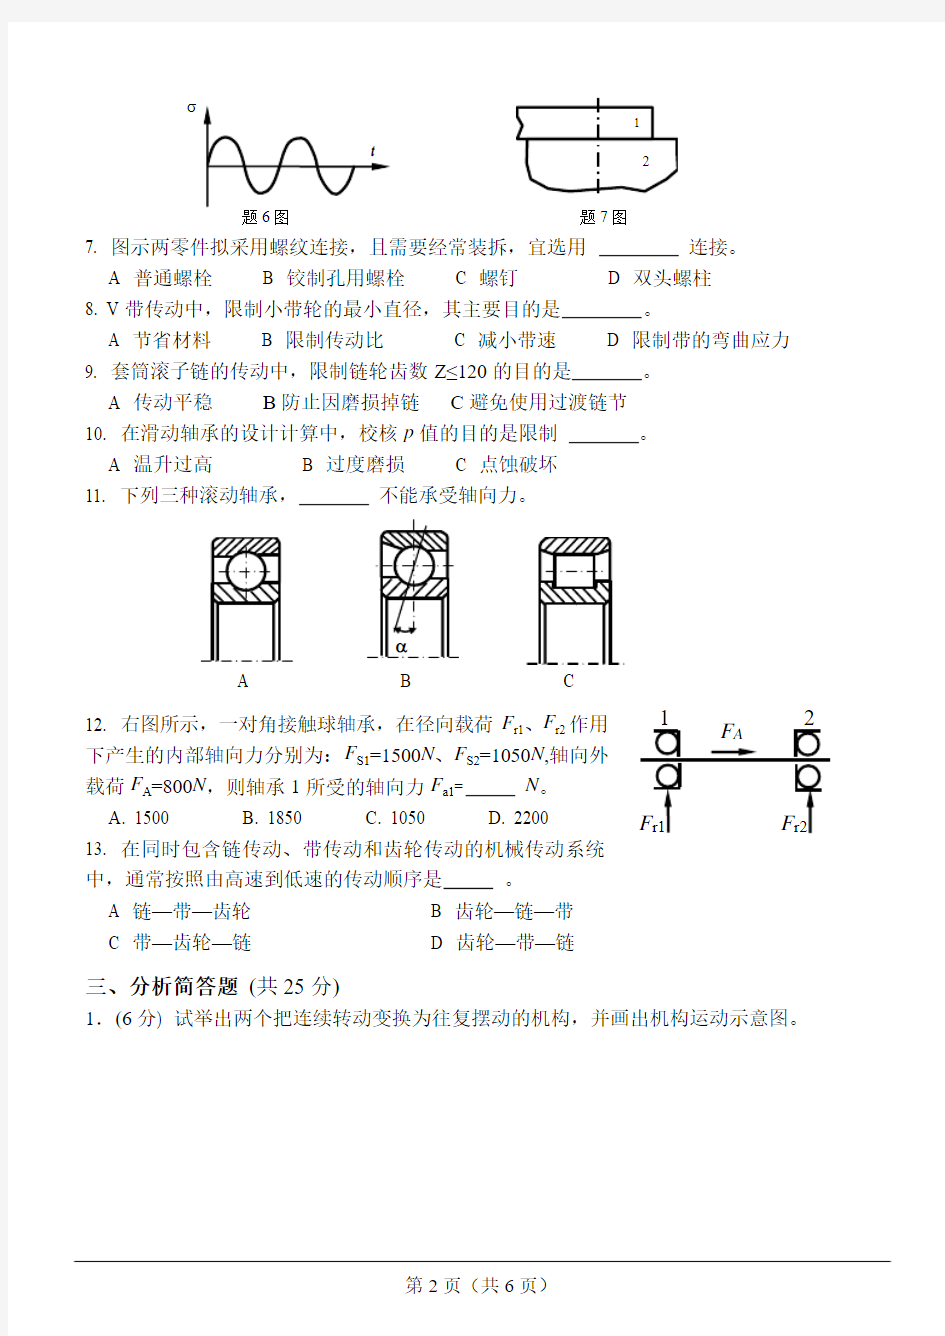 河南科技大学2012年硕士研究生入学考试试题-901机械设计基础试题